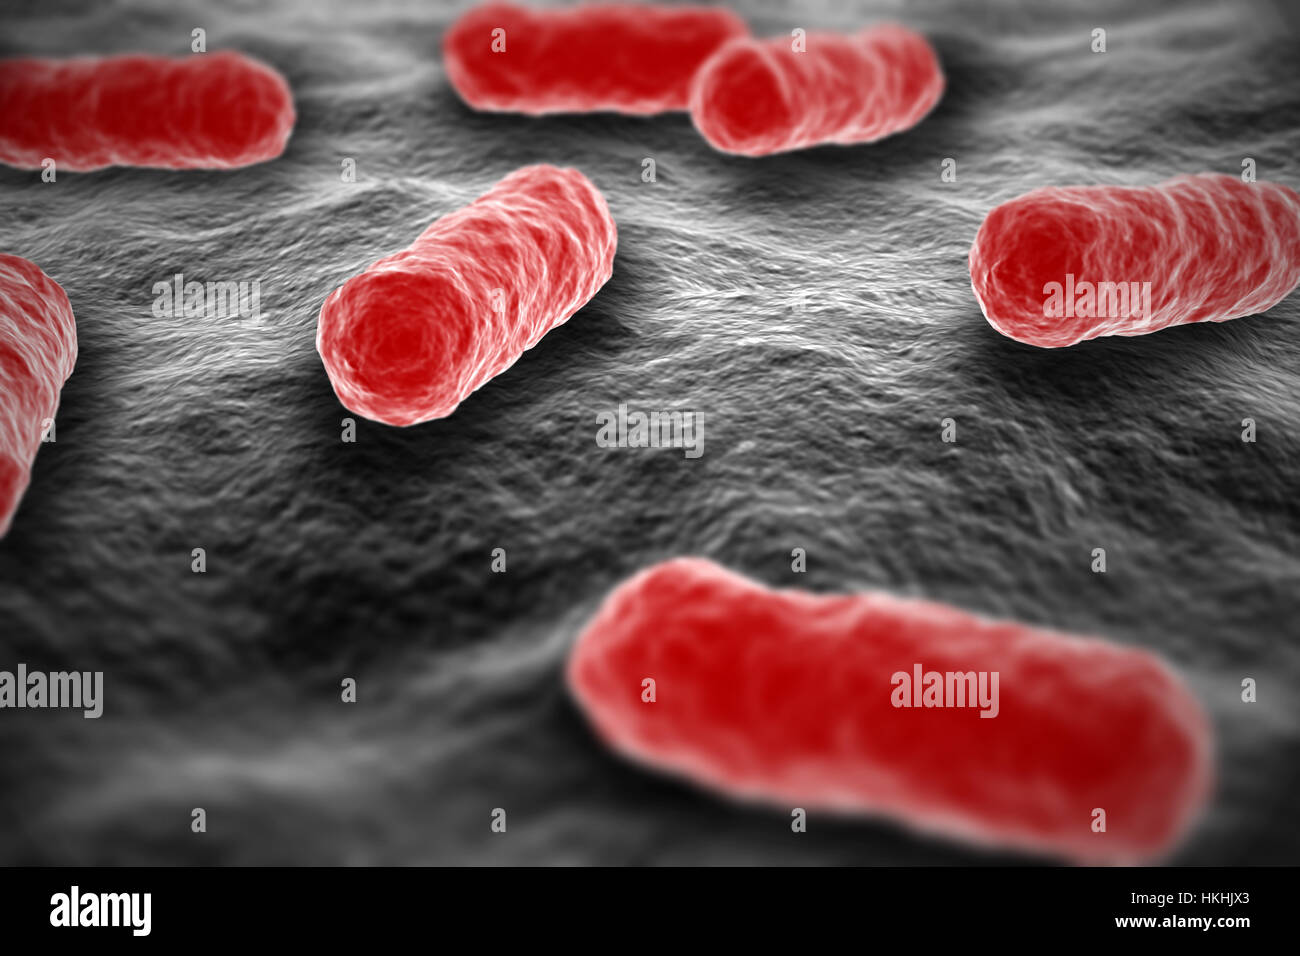 La bactérie salmonella de couleur rouge sur l'illustration de la surface vue microscopique Banque D'Images